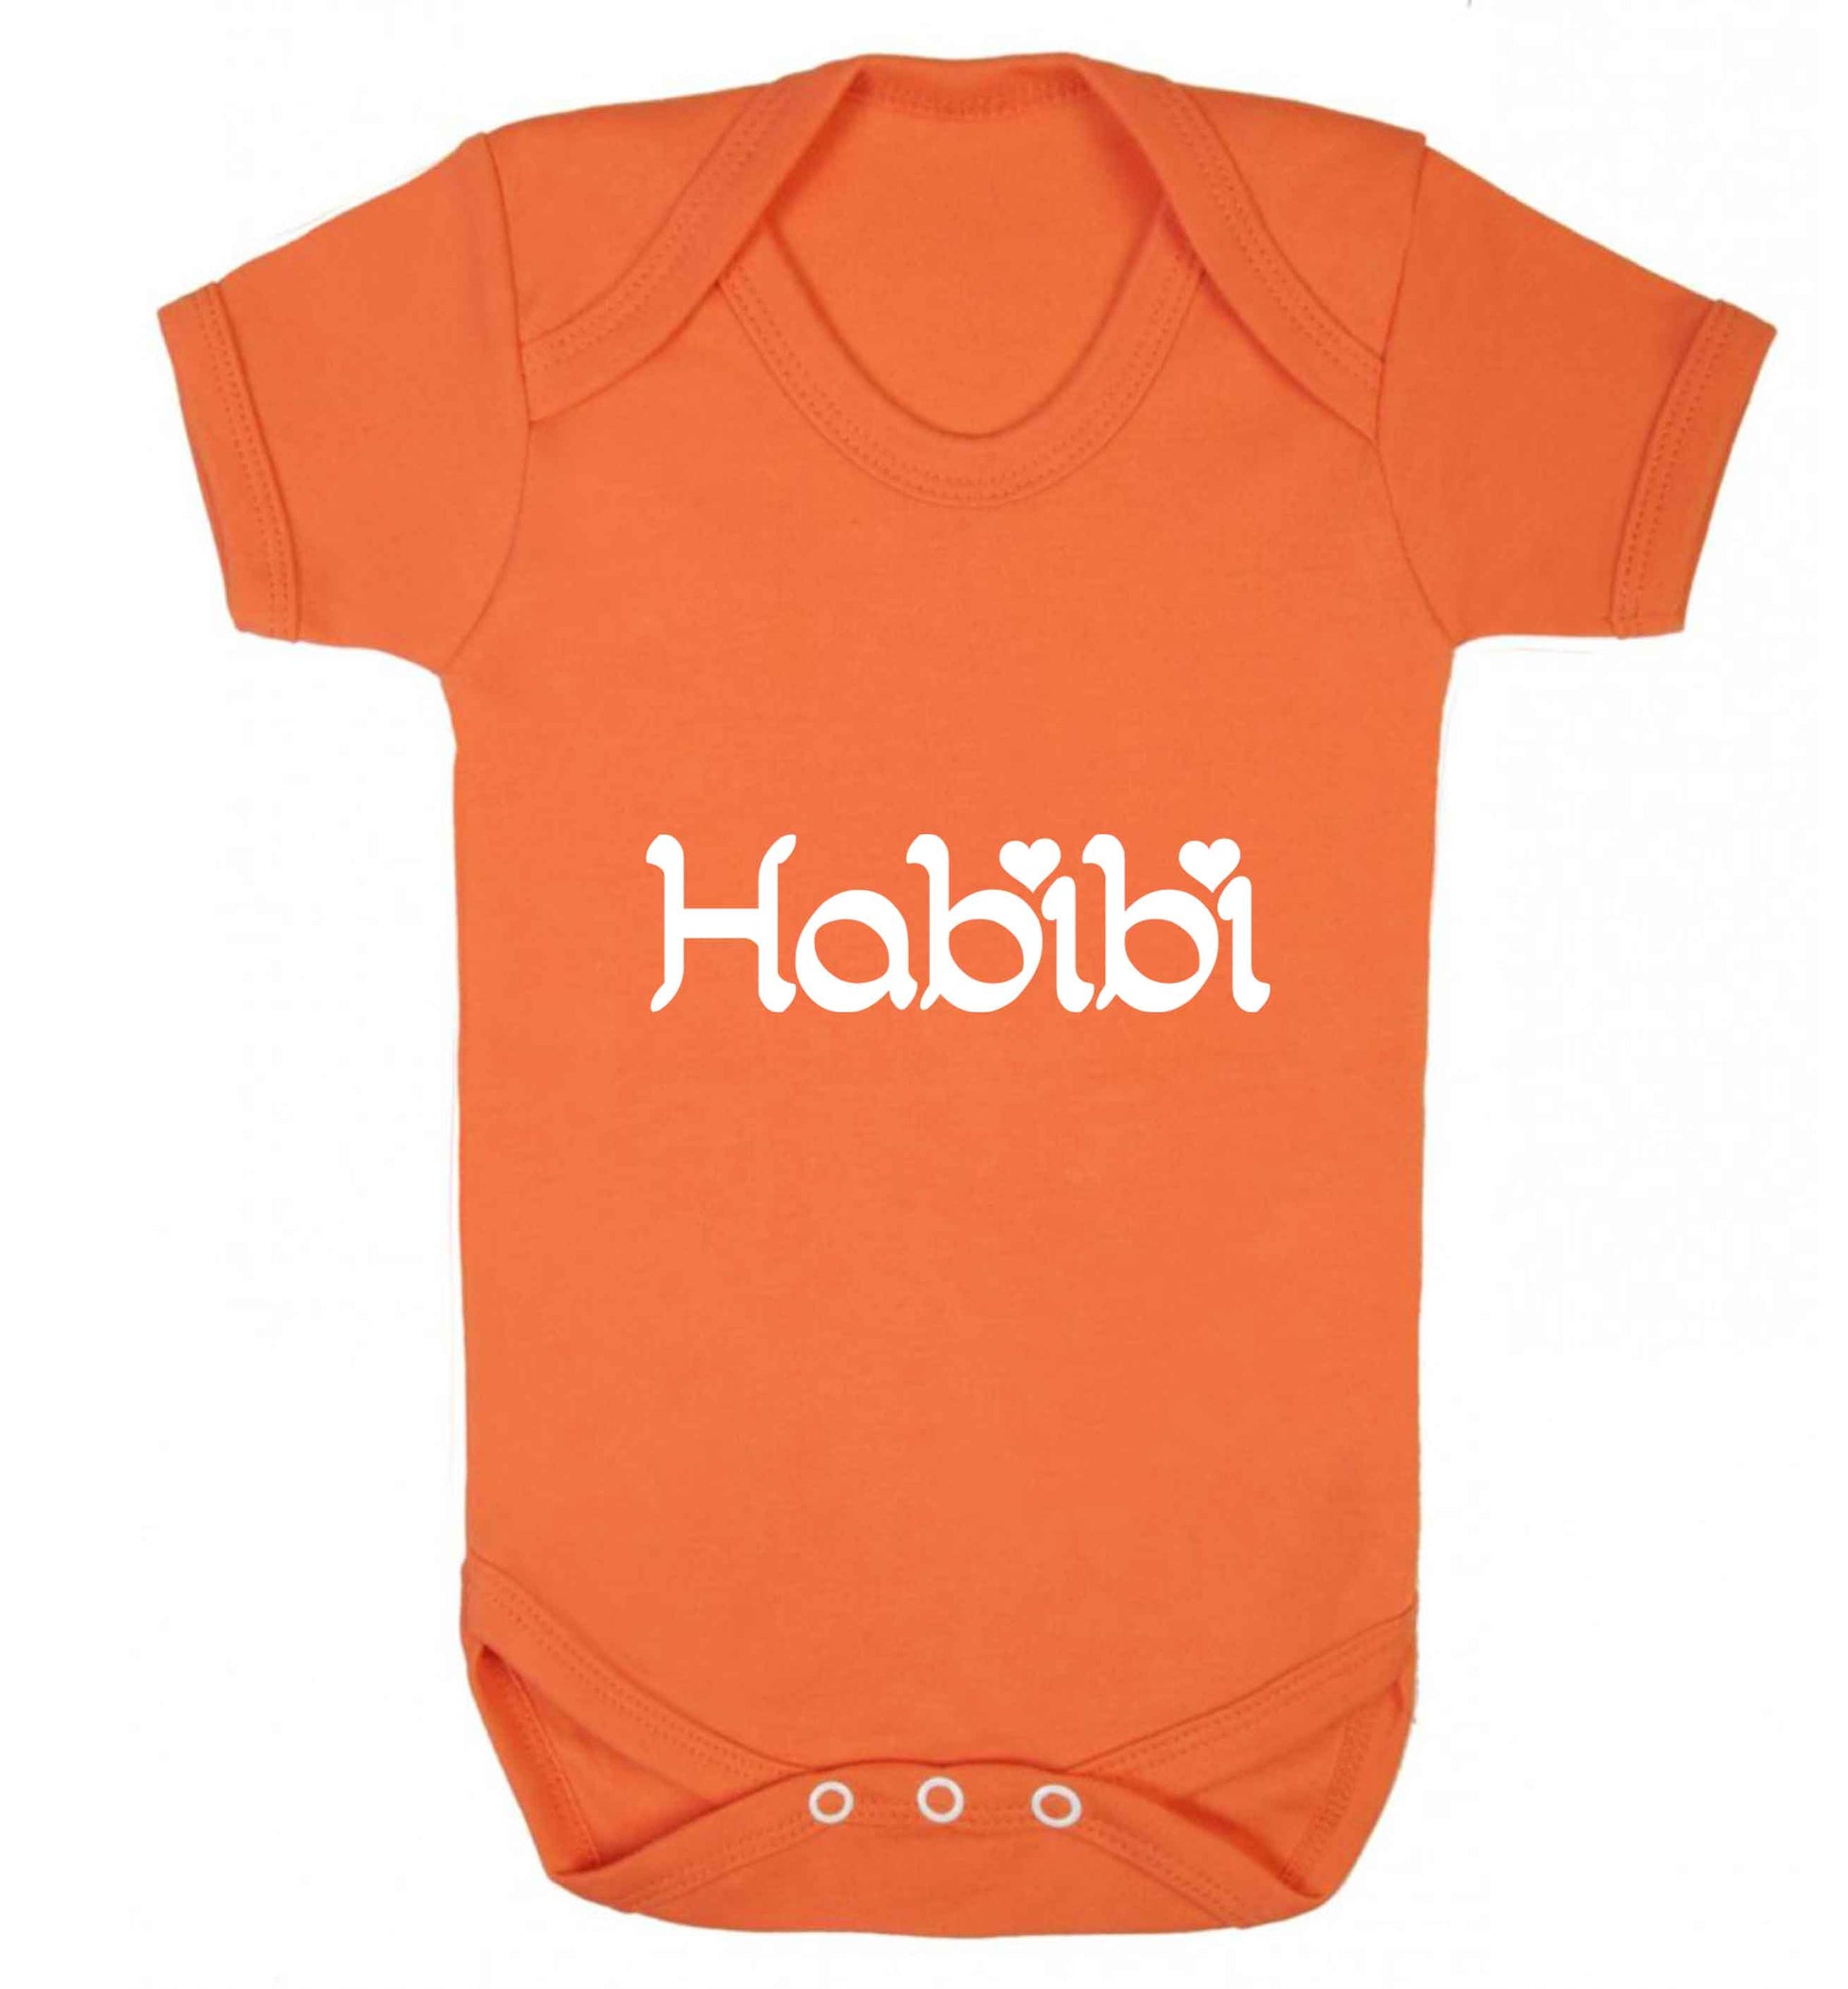 Habibi baby vest orange 18-24 months